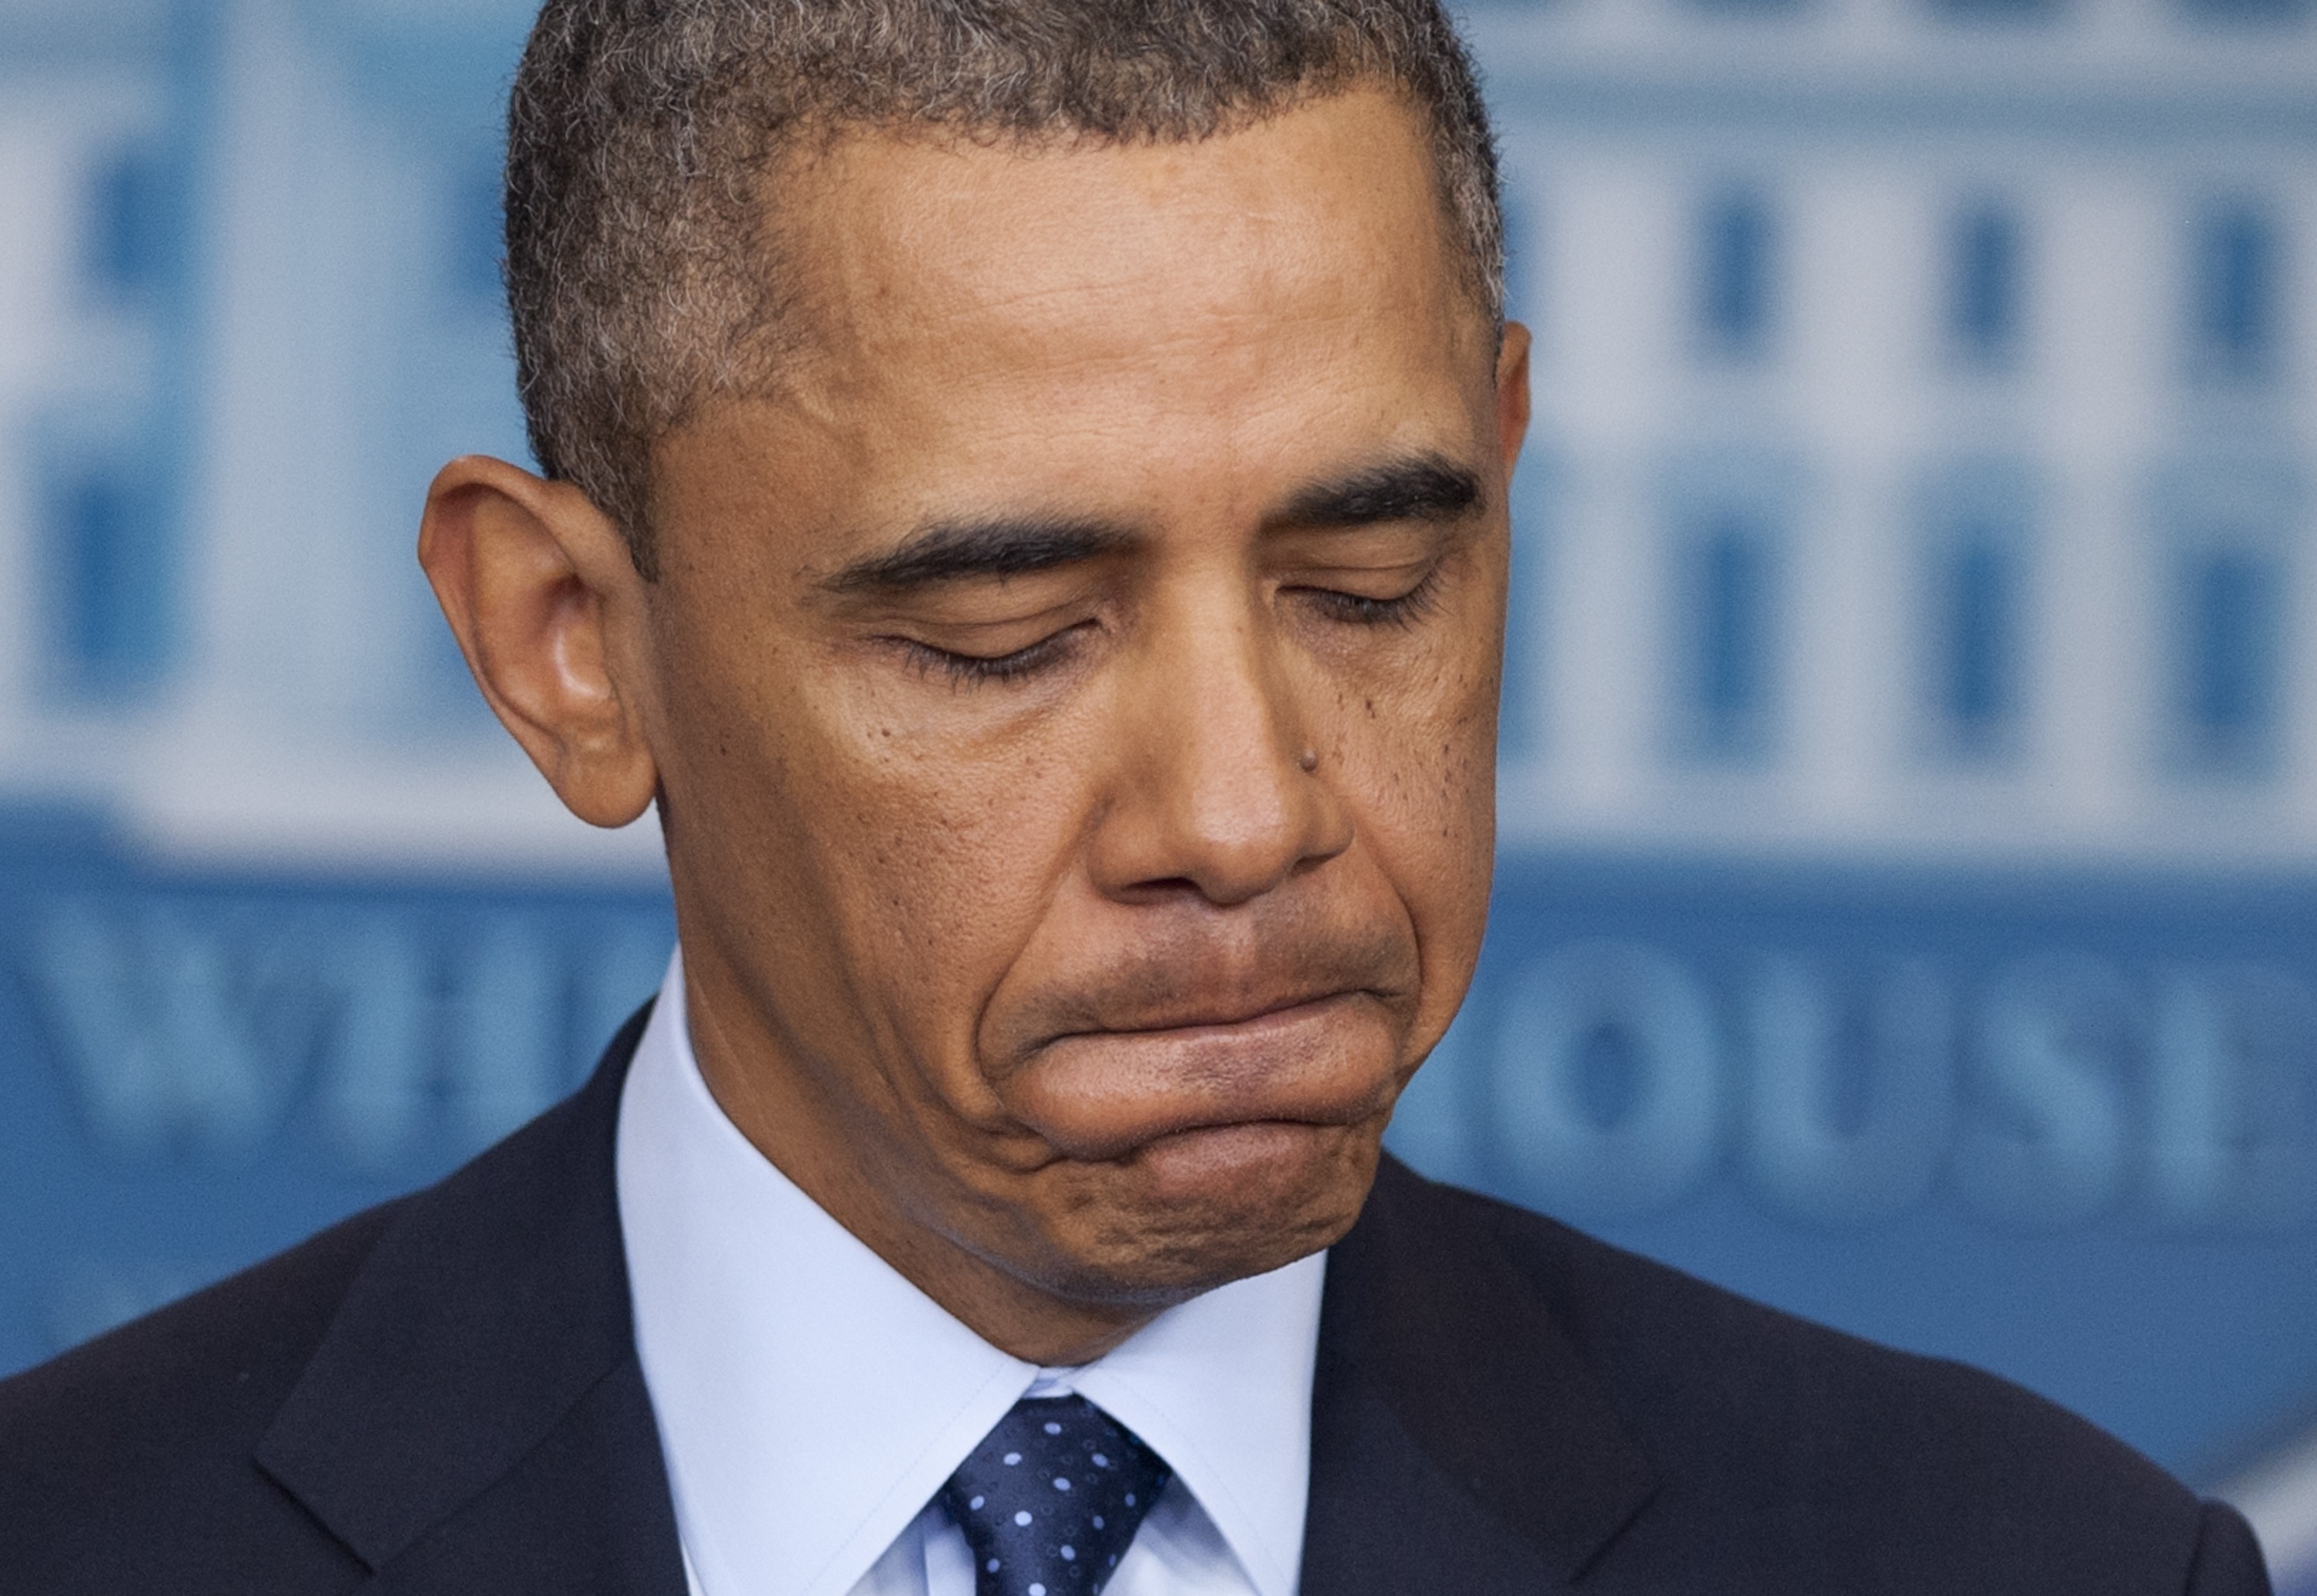 Obama promete apoyo para responder a “tragedia” tras la explosión en Texas